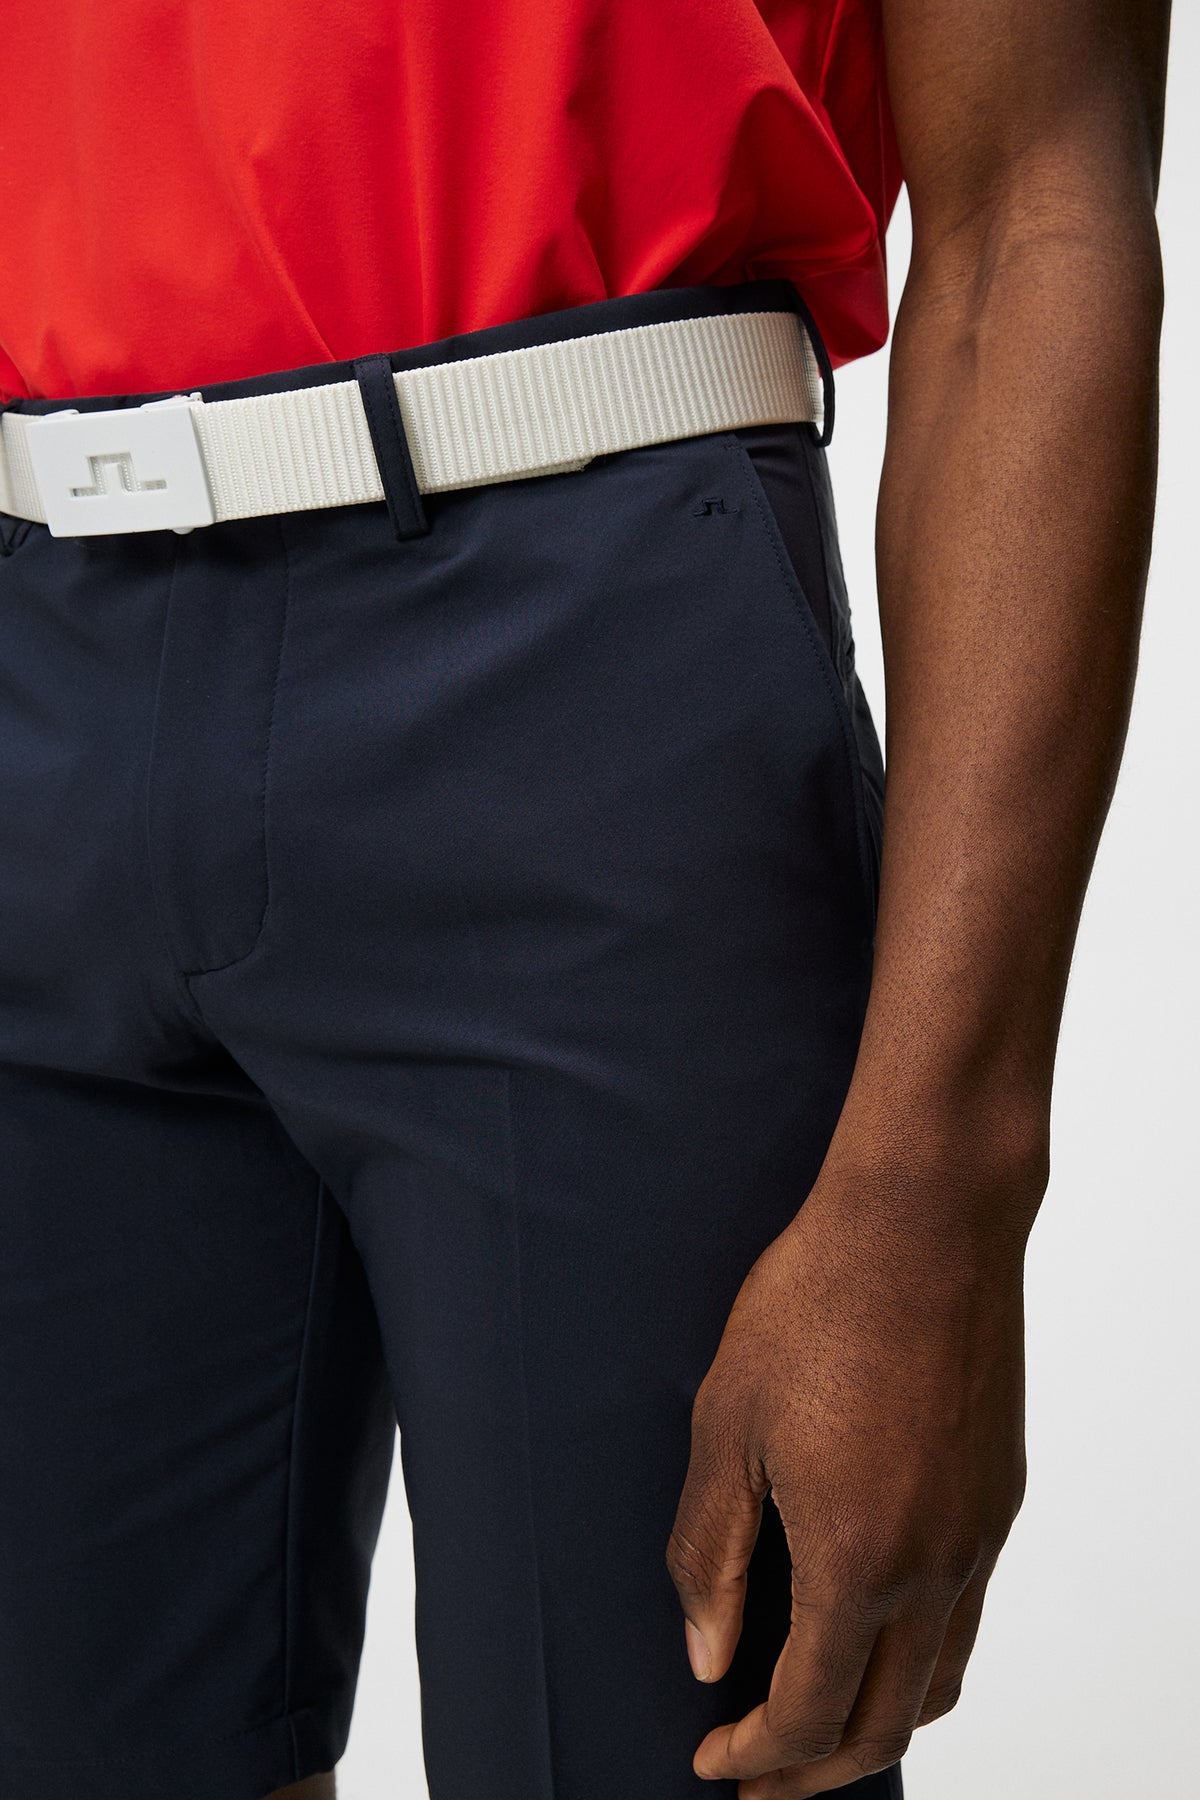 Somle Shorts / JL Navy